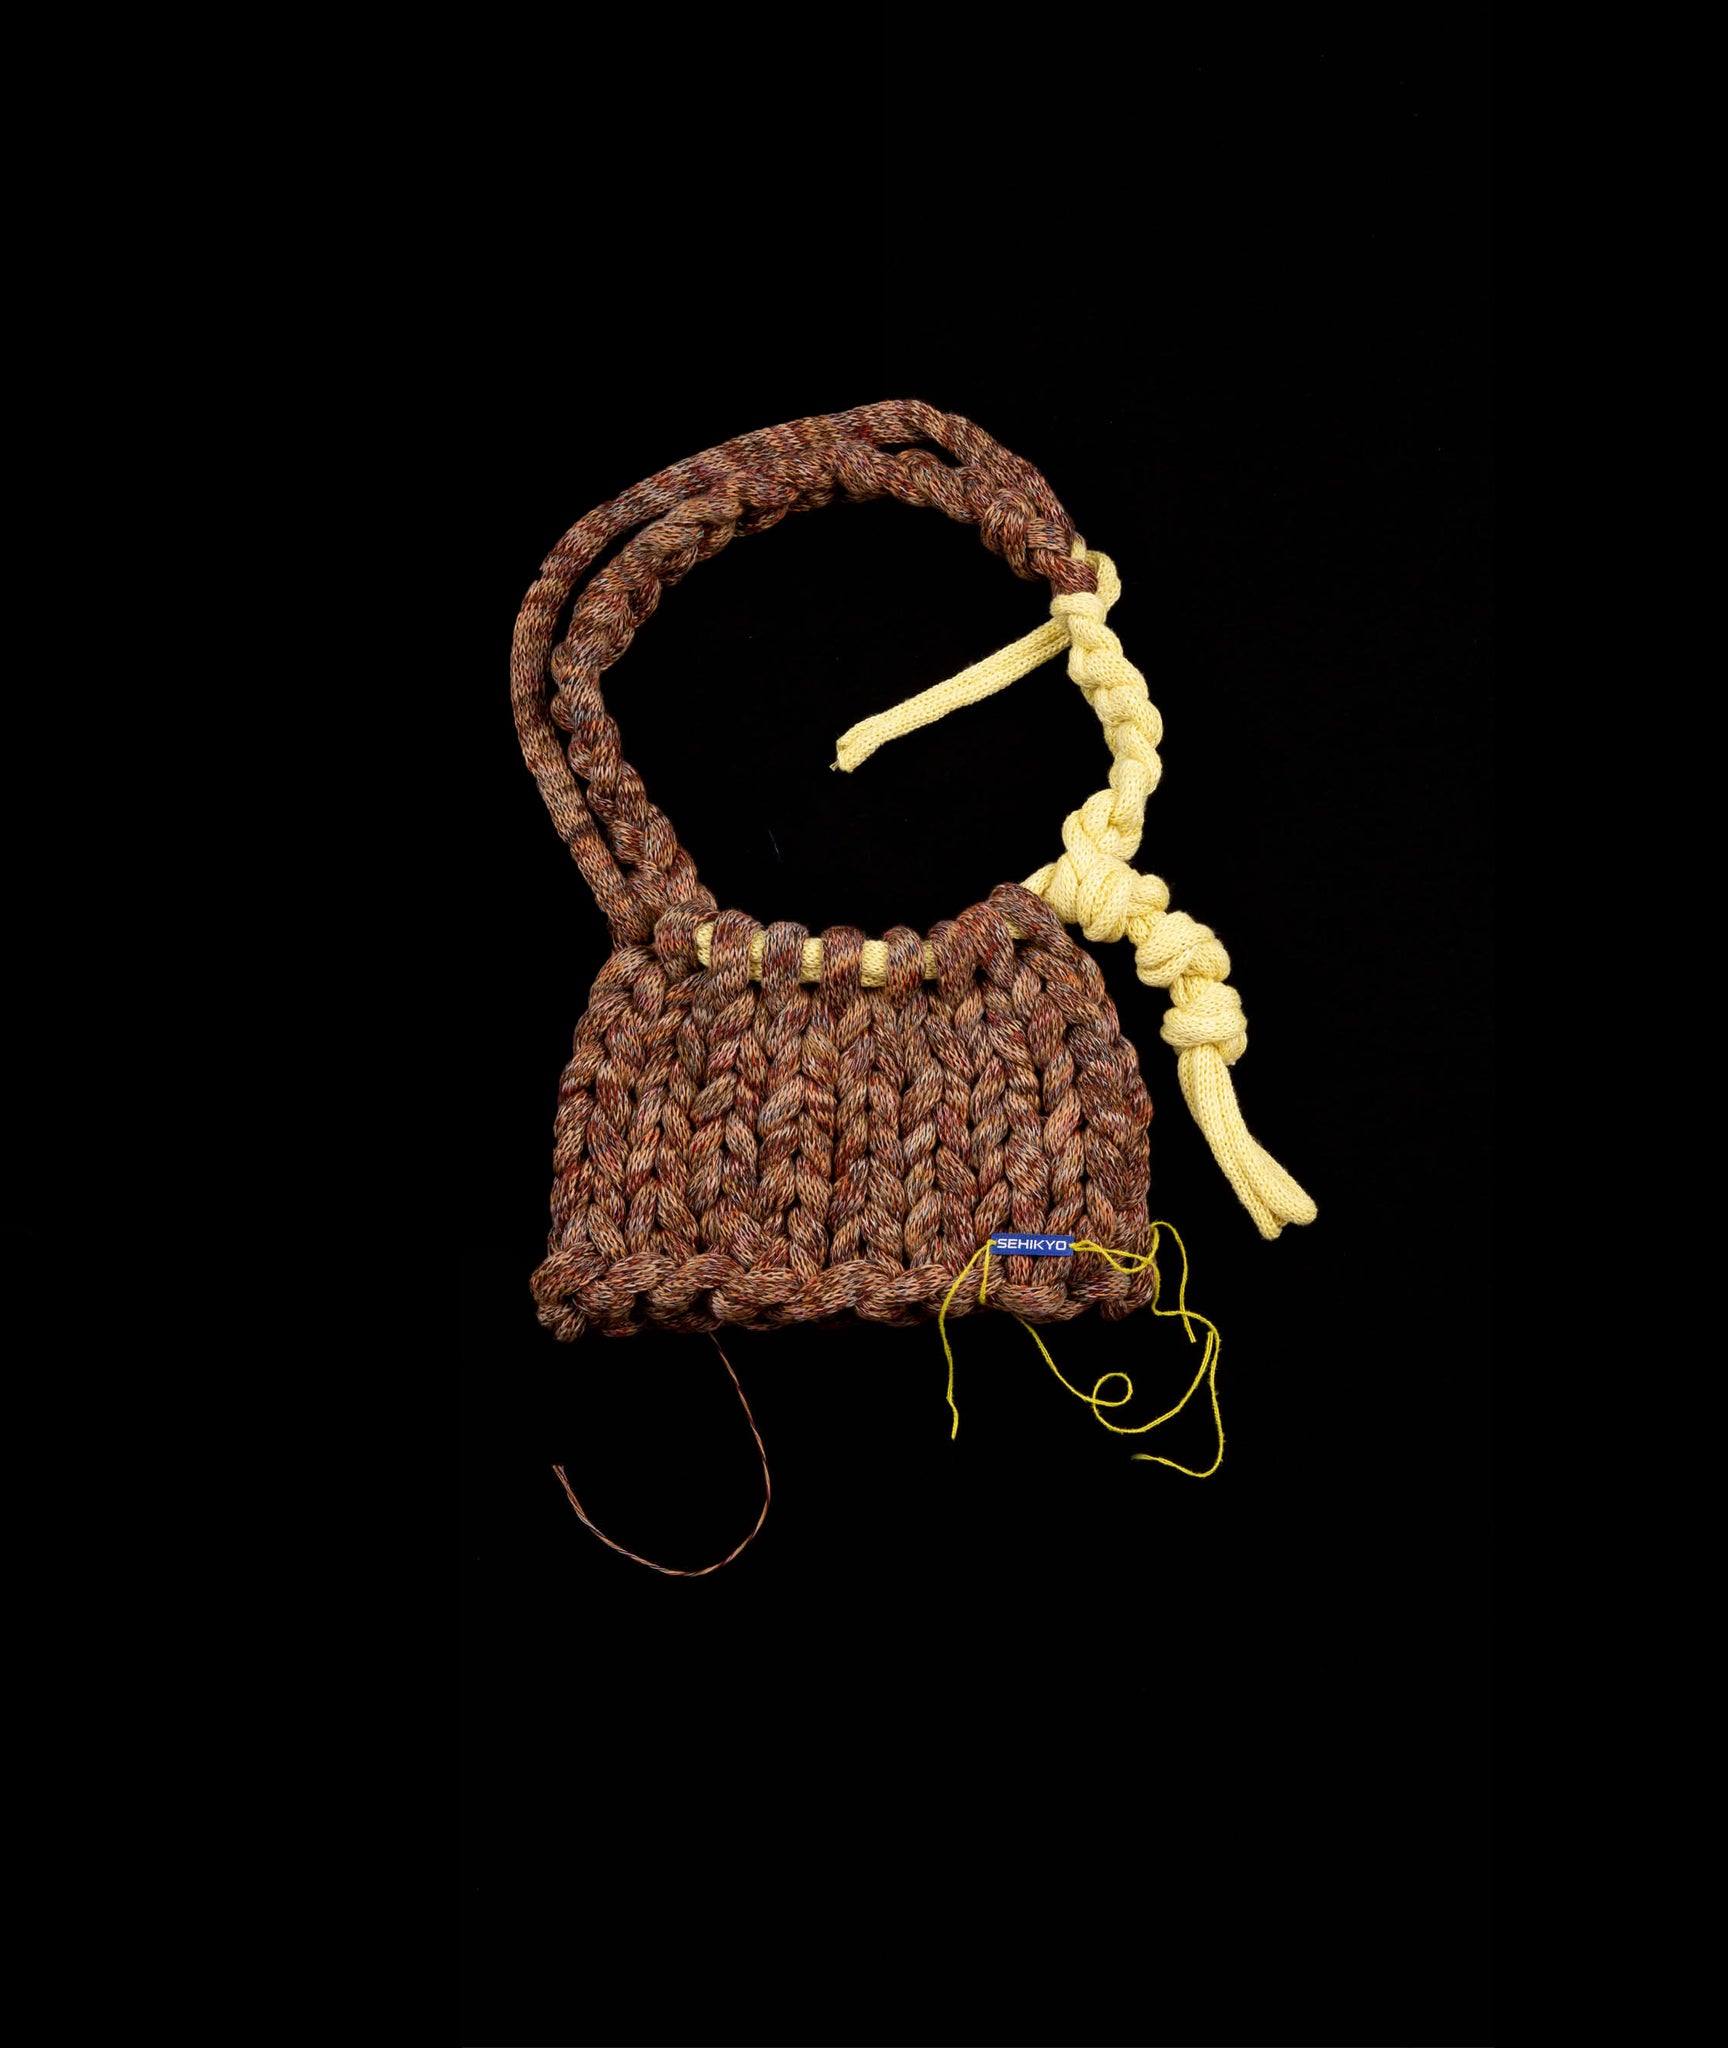 Mini knitted bag